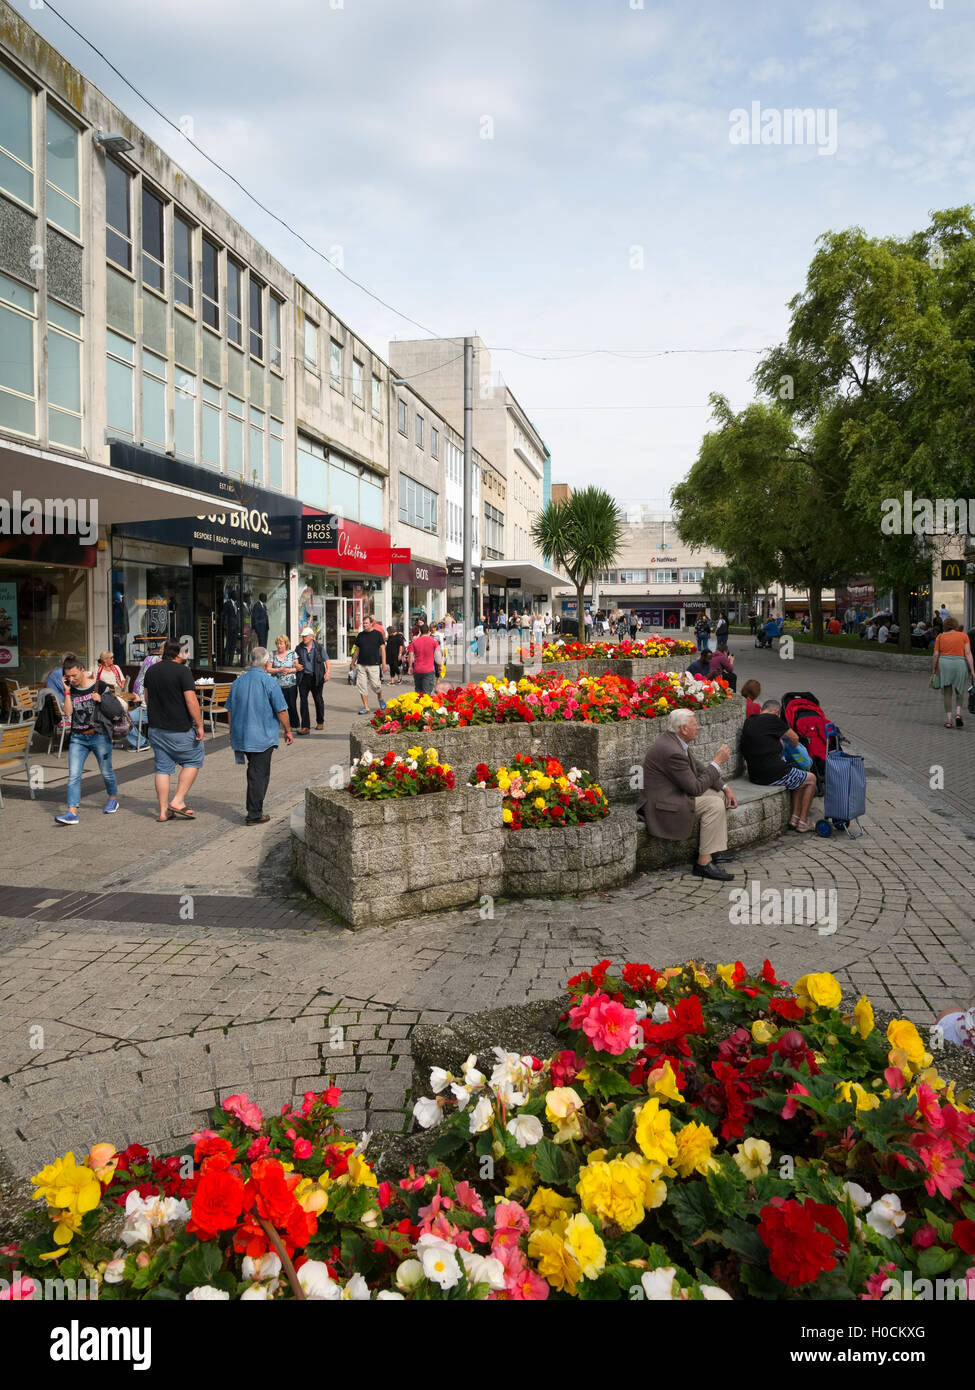 Lits de fleurs colorées dans les nouvelles George Street Shopping Precinct, plymouth Devon, Angleterre. Banque D'Images